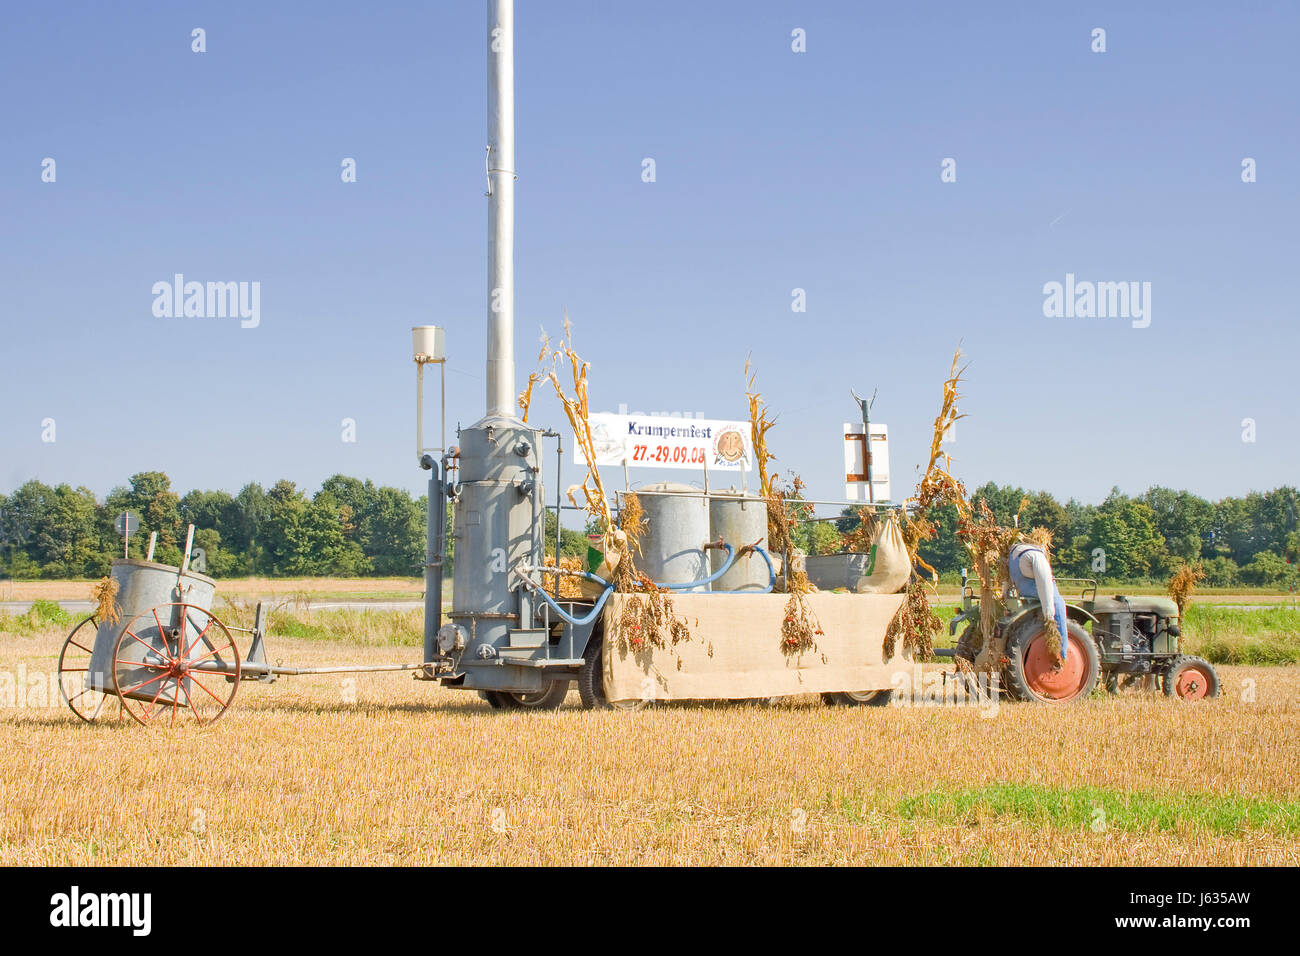 Entreprise d'été fermement summerly festivités du tracteur agricole agriculture signposts Banque D'Images